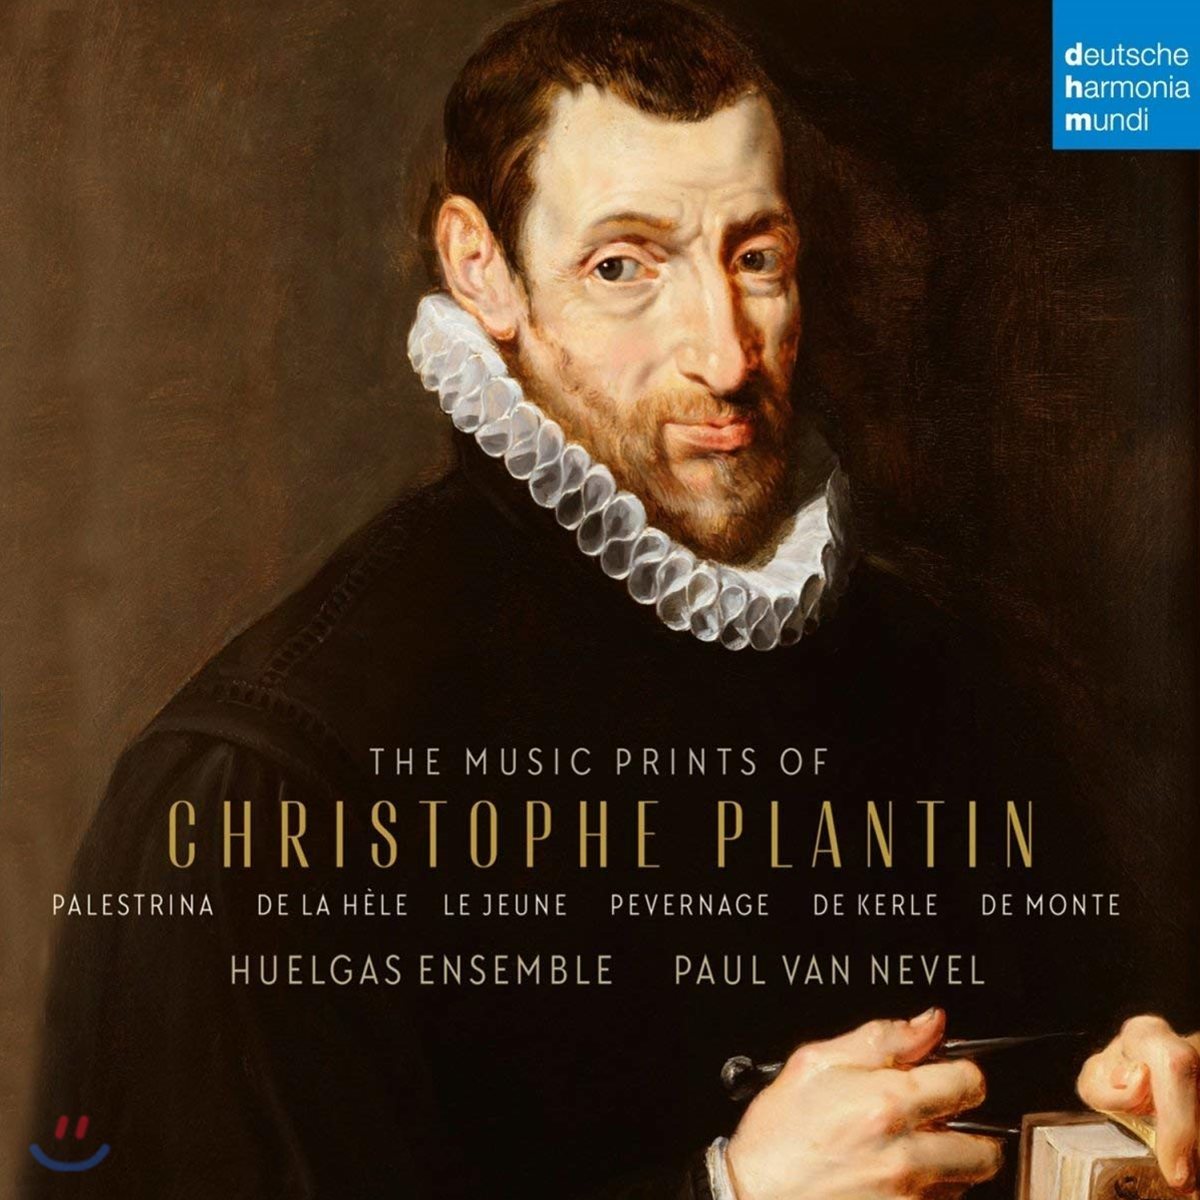 Paul Van Nevel 크리스토프 플랑탱 음악집 - 16세기 플랑드르 작품집 (The Music Prints of Christophe Plantin)